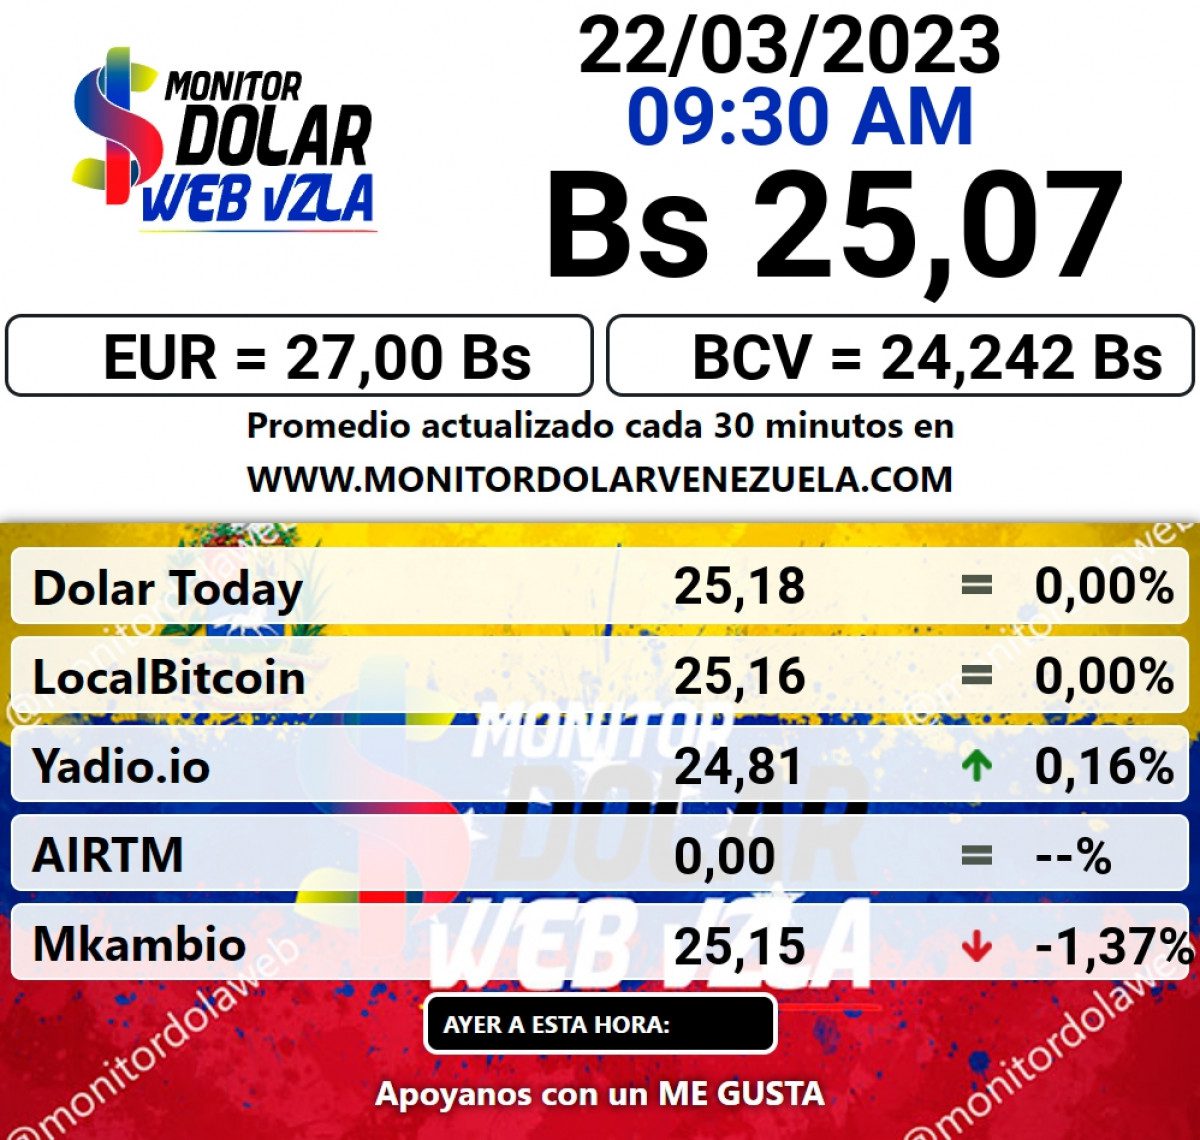 dolartoday en venezuela precio del dolar este miercoles 22 de marzo de 2023 laverdaddemonagas.com monitor13